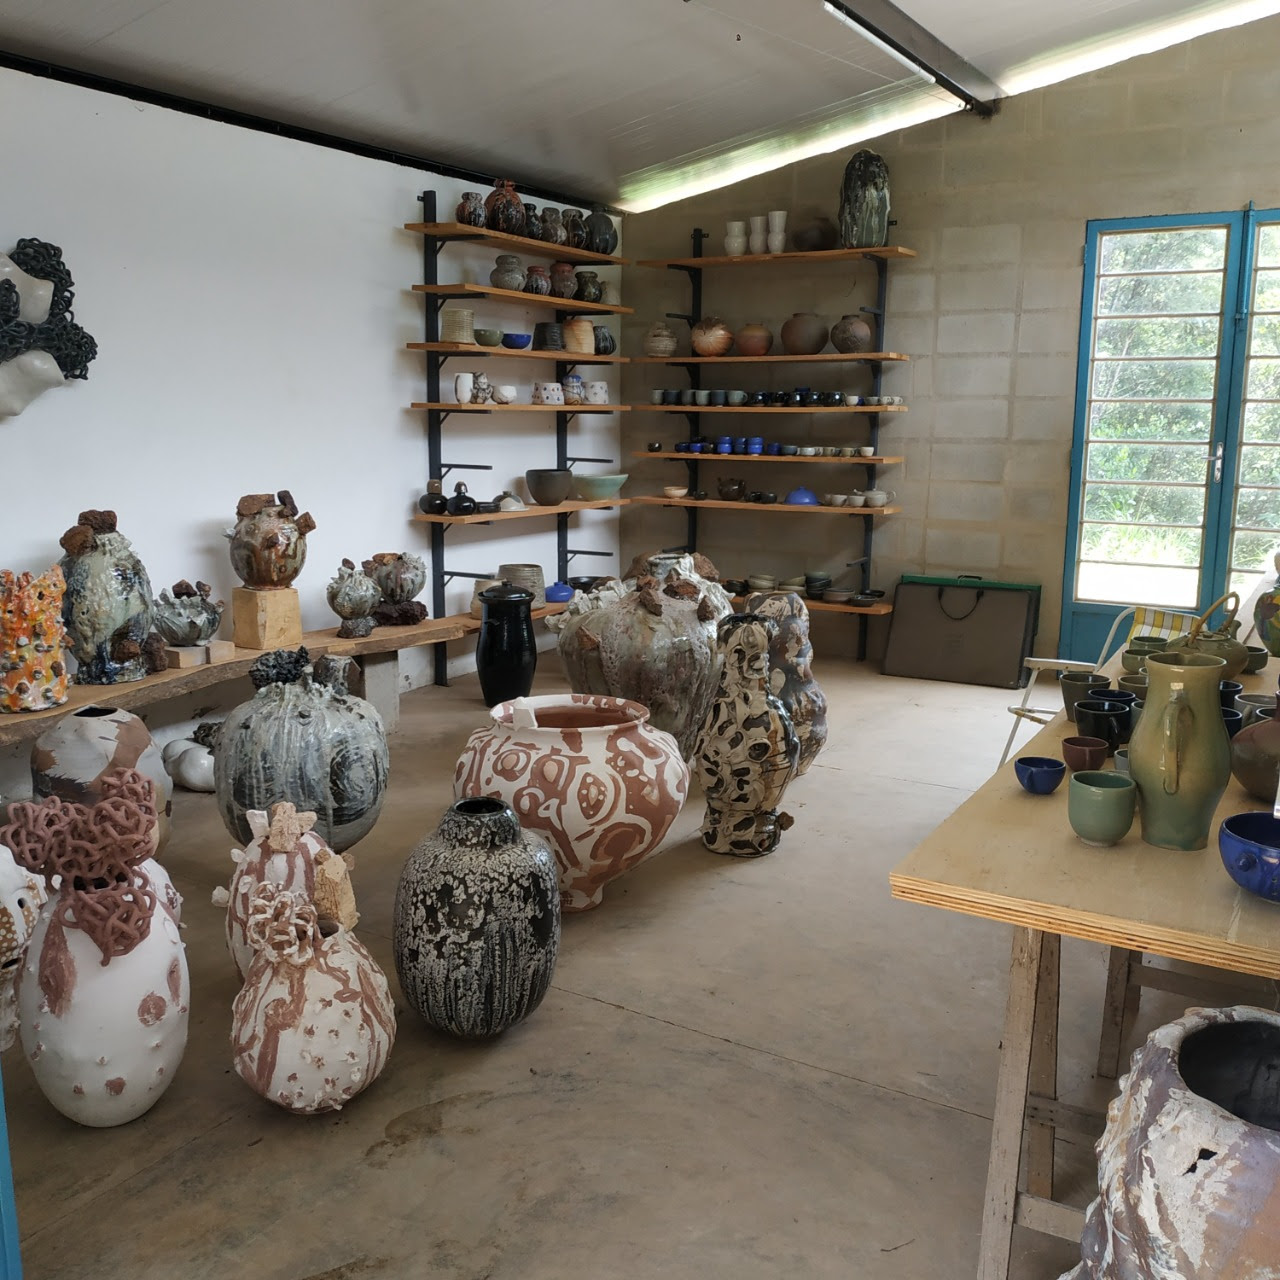 Imagem do ateliê de Benedikt Wiertz. O local possui diversos grandes vasos de cerâmica no chão e ao fundo há prateleiras com objetos menores.